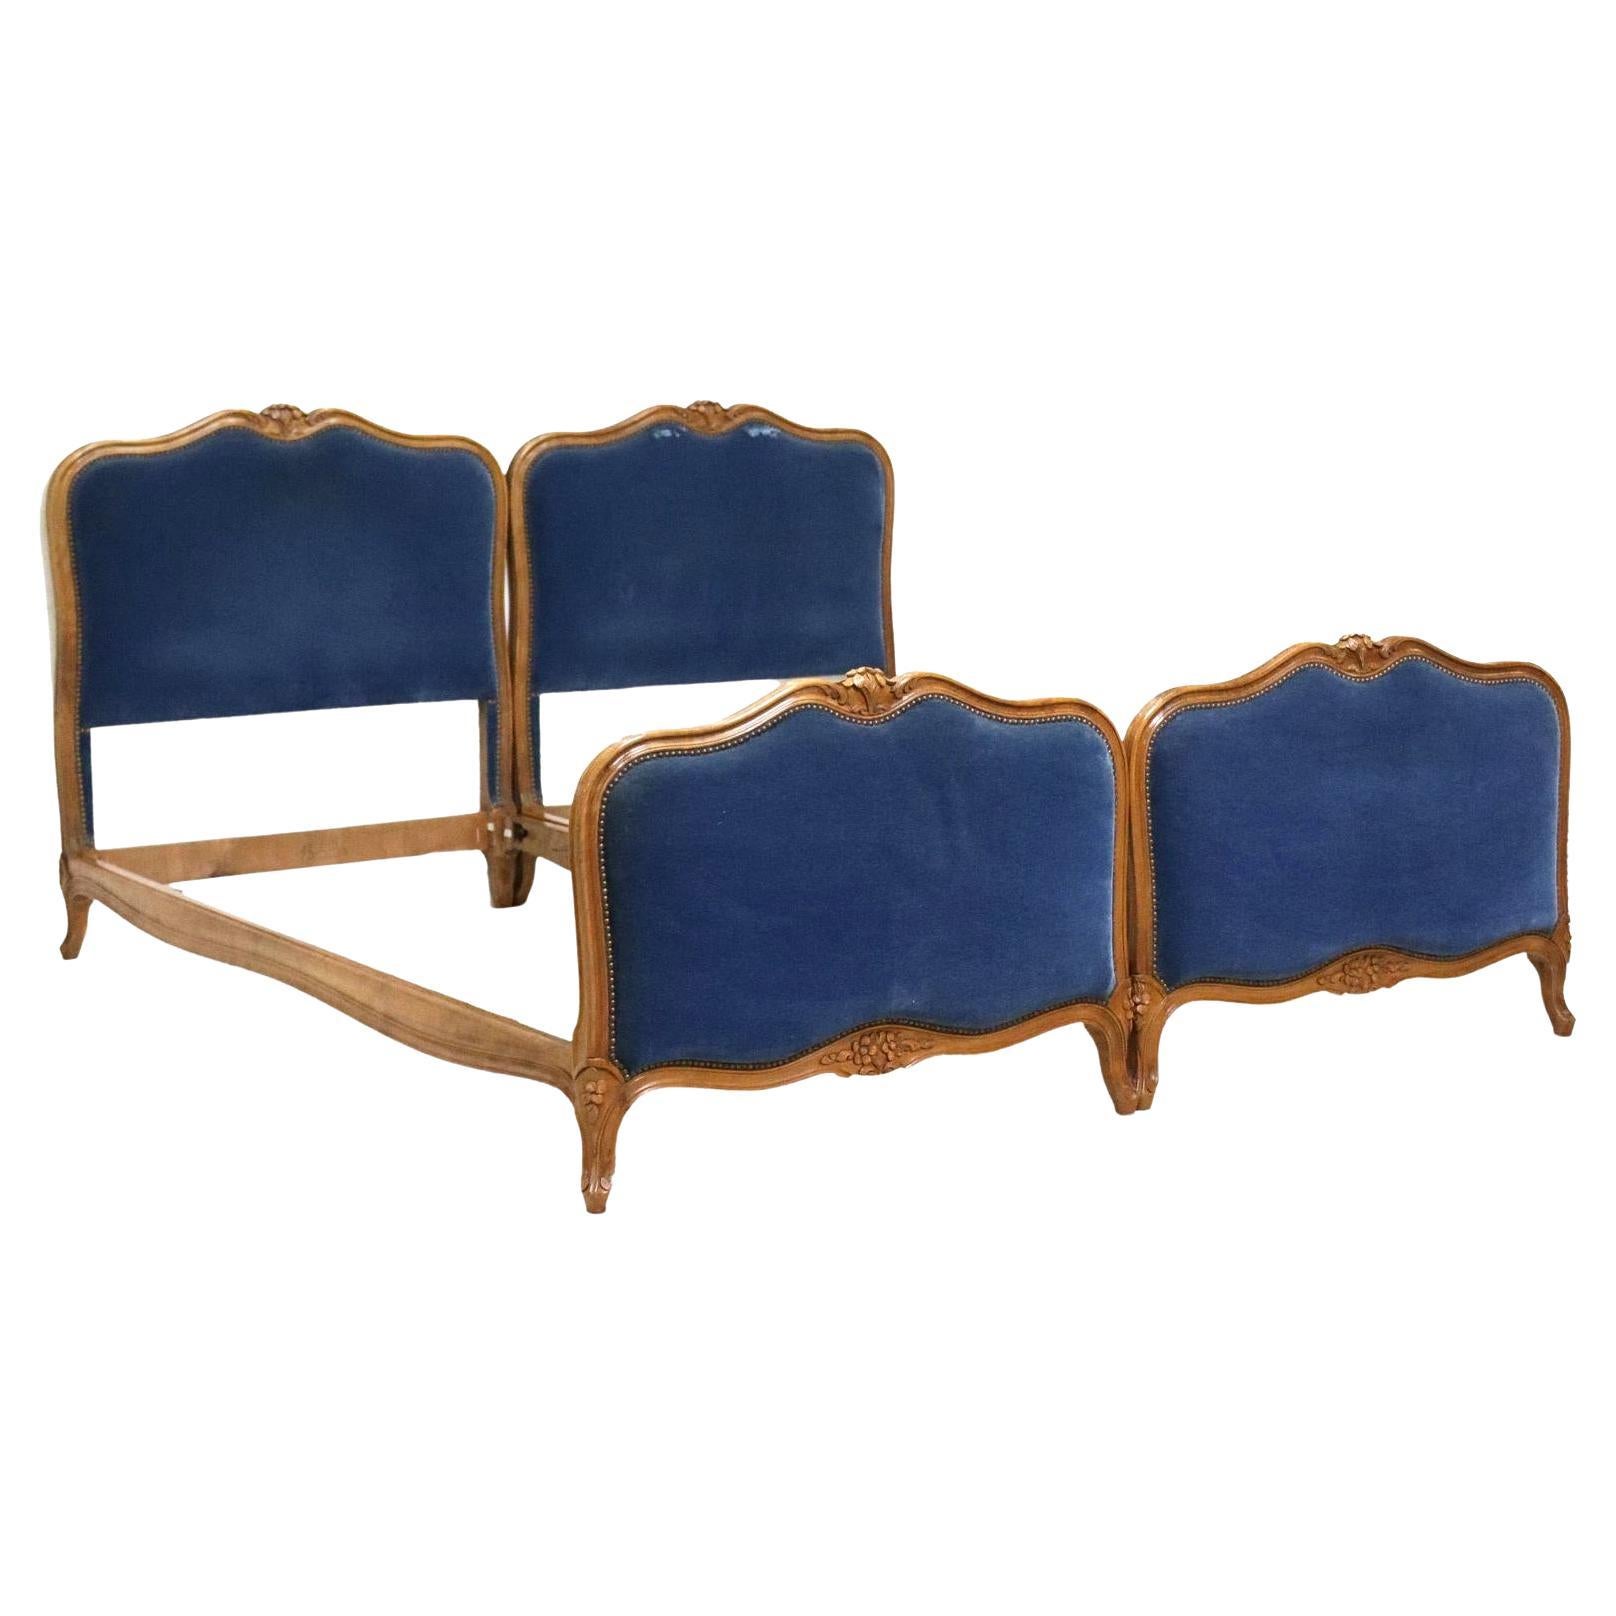 Paire de lits jumeaux de style Louis XV français ancien tapissés de velours bleu en vente